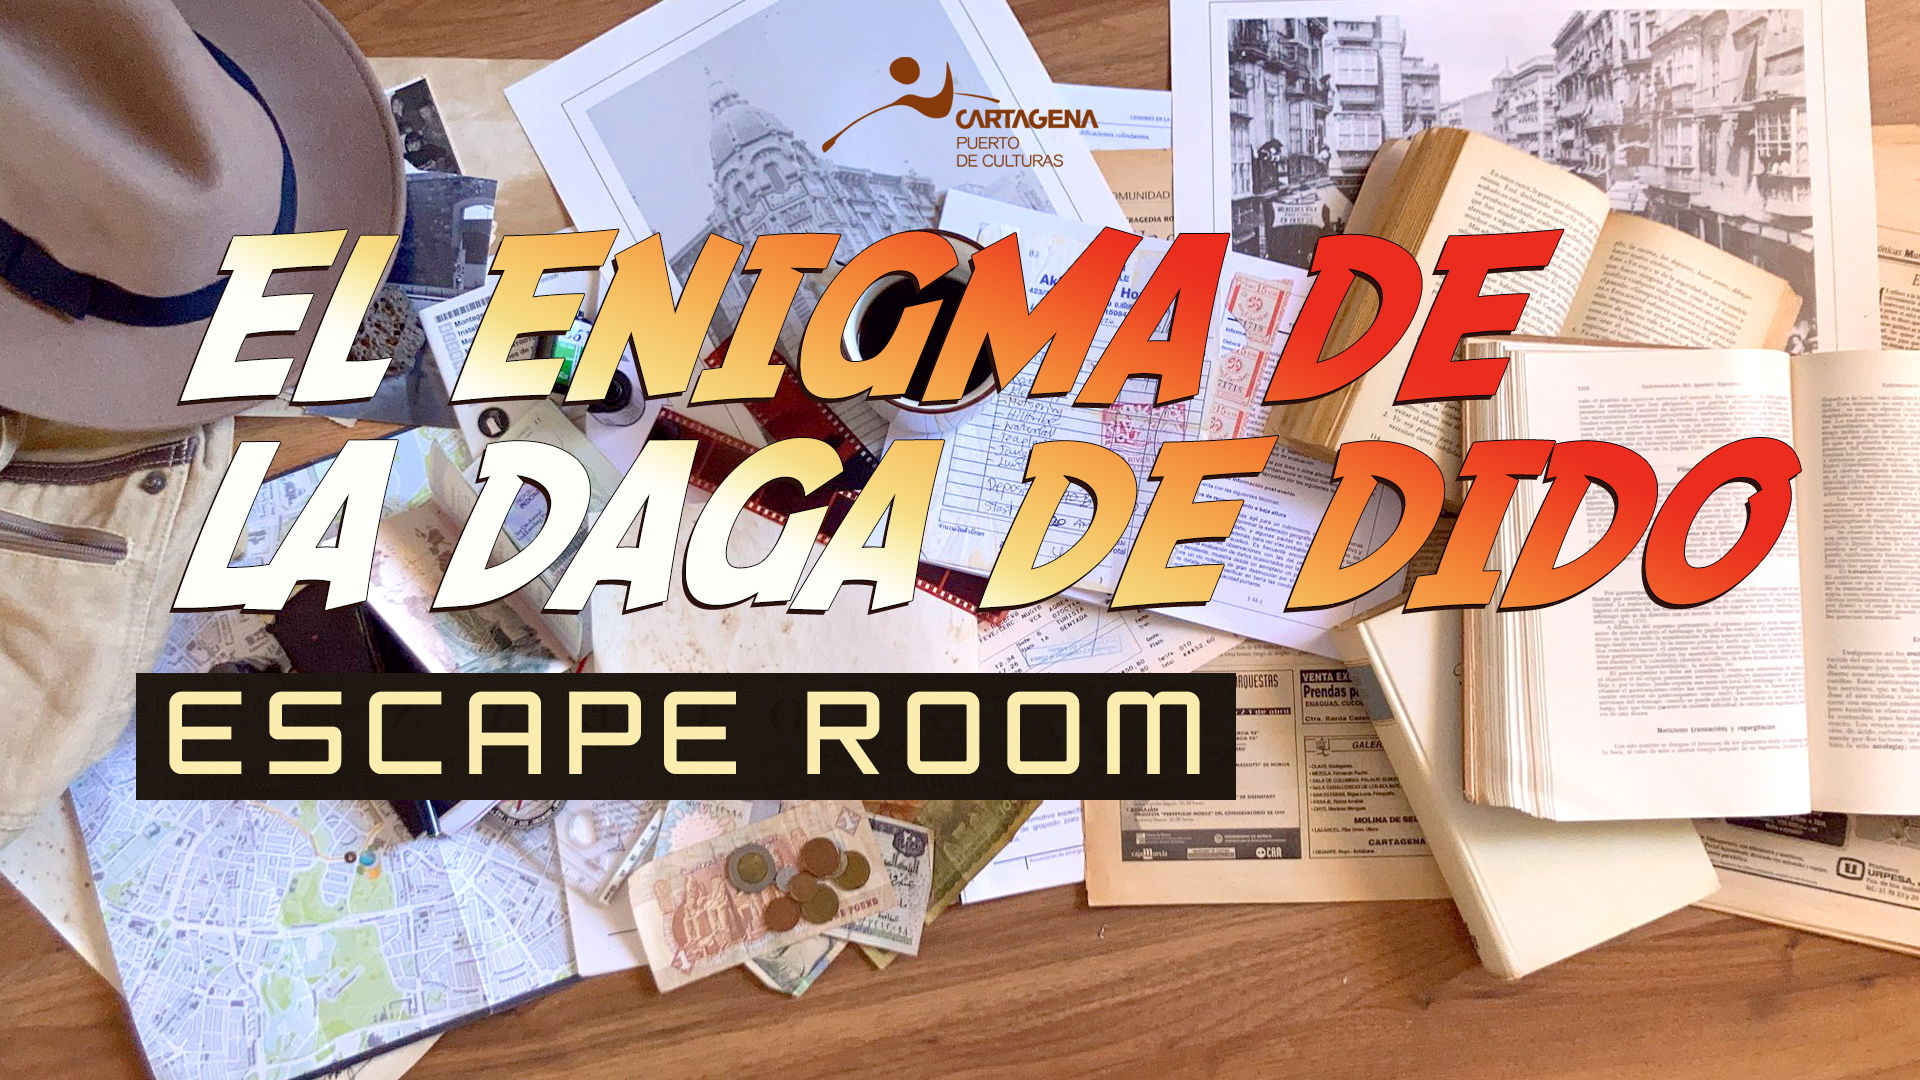 'EL ENIGMA DE LA DAGA DE DIDO EN LA EXPOSICION DE INDIANA JONES'. Escape room